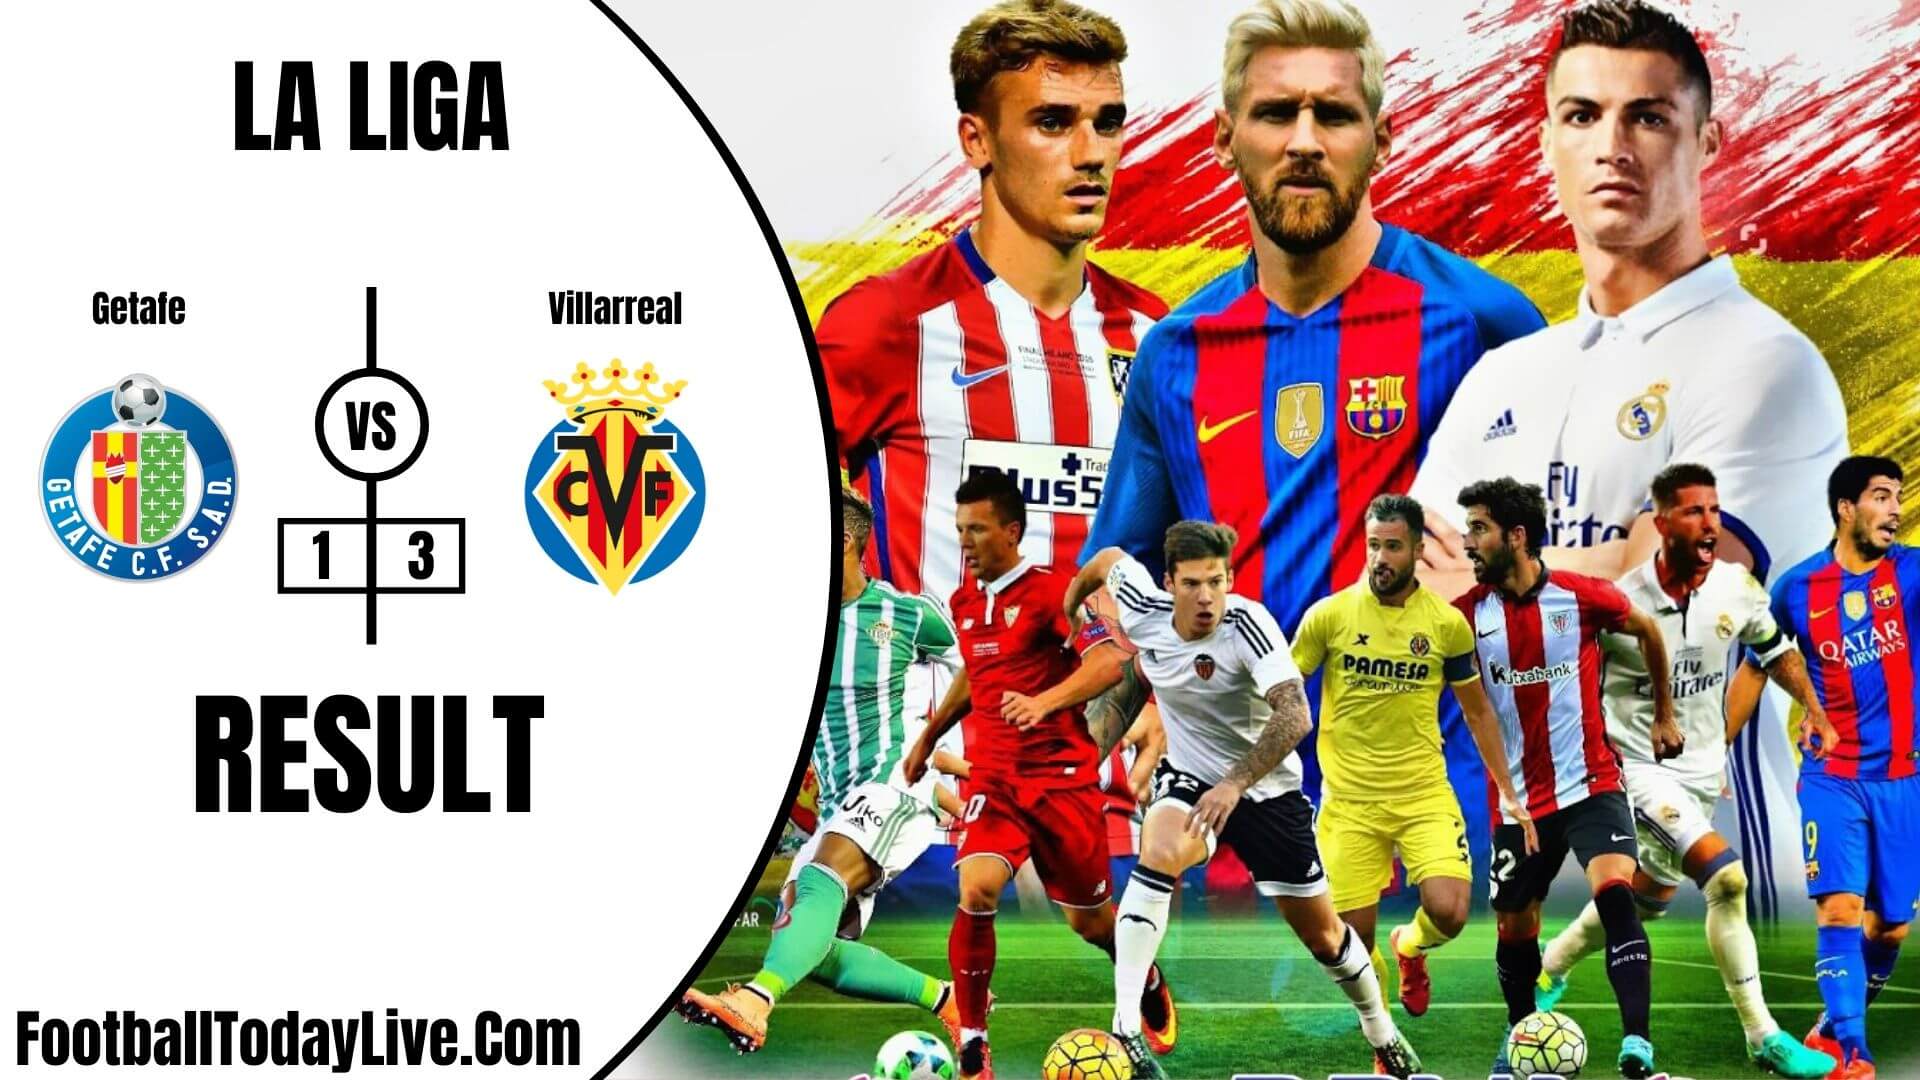 Getafe Vs Villarreal | La Liga Week 35 Result 2020